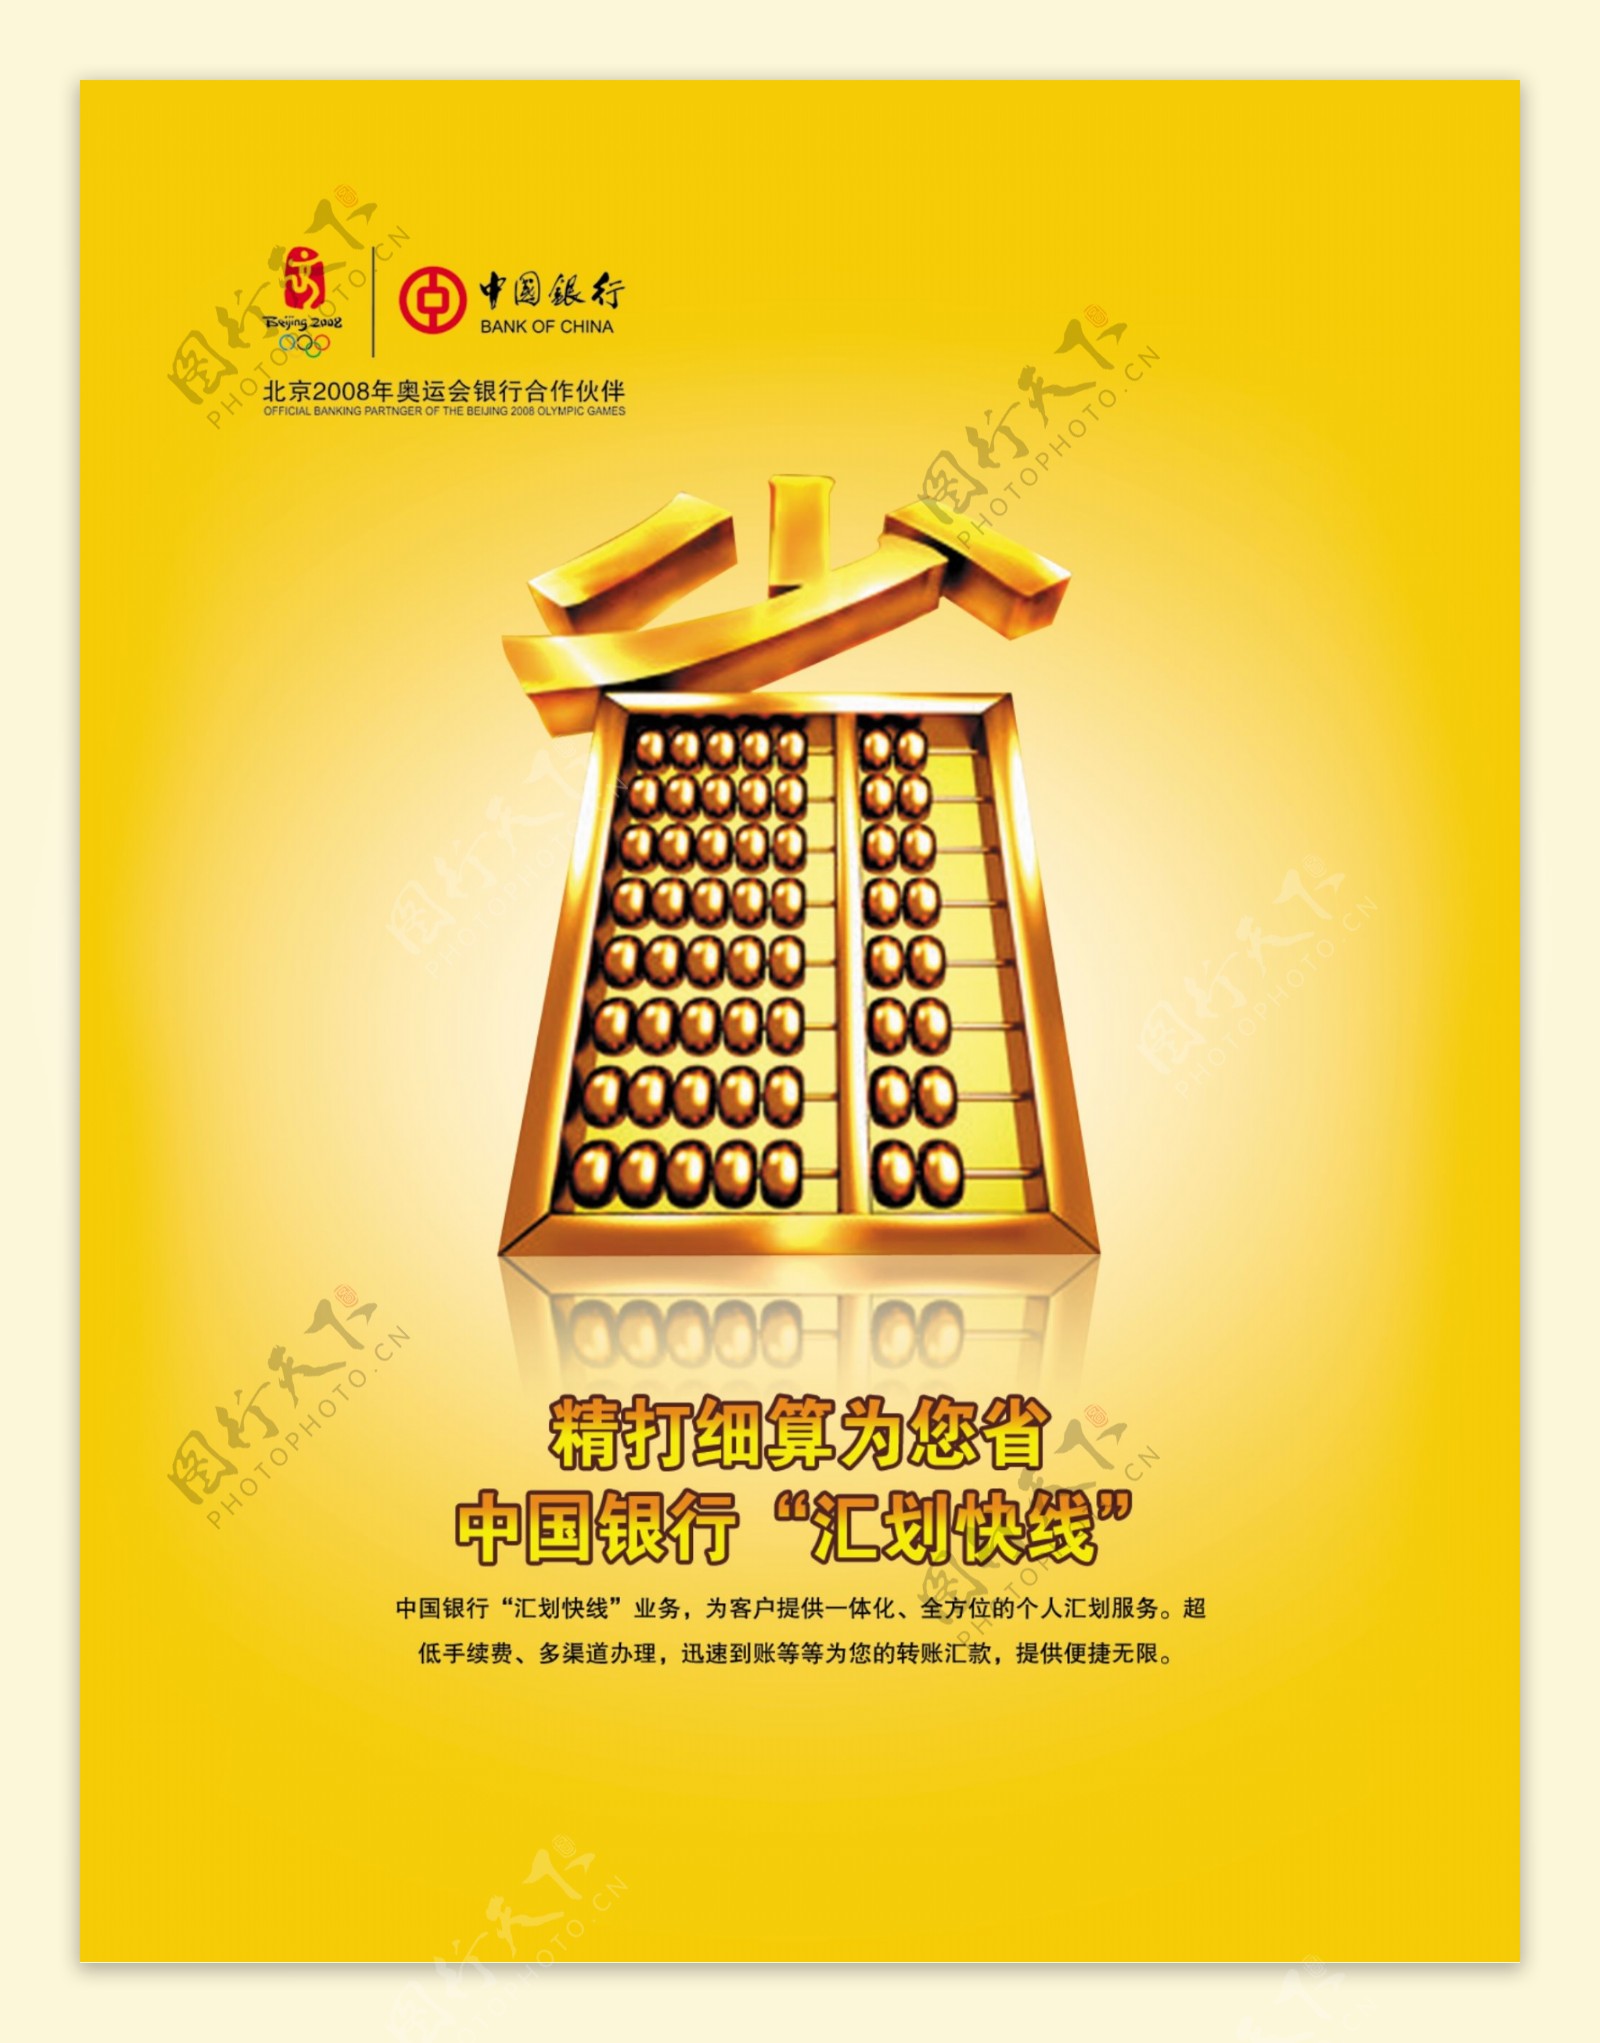 中国银行海报图片